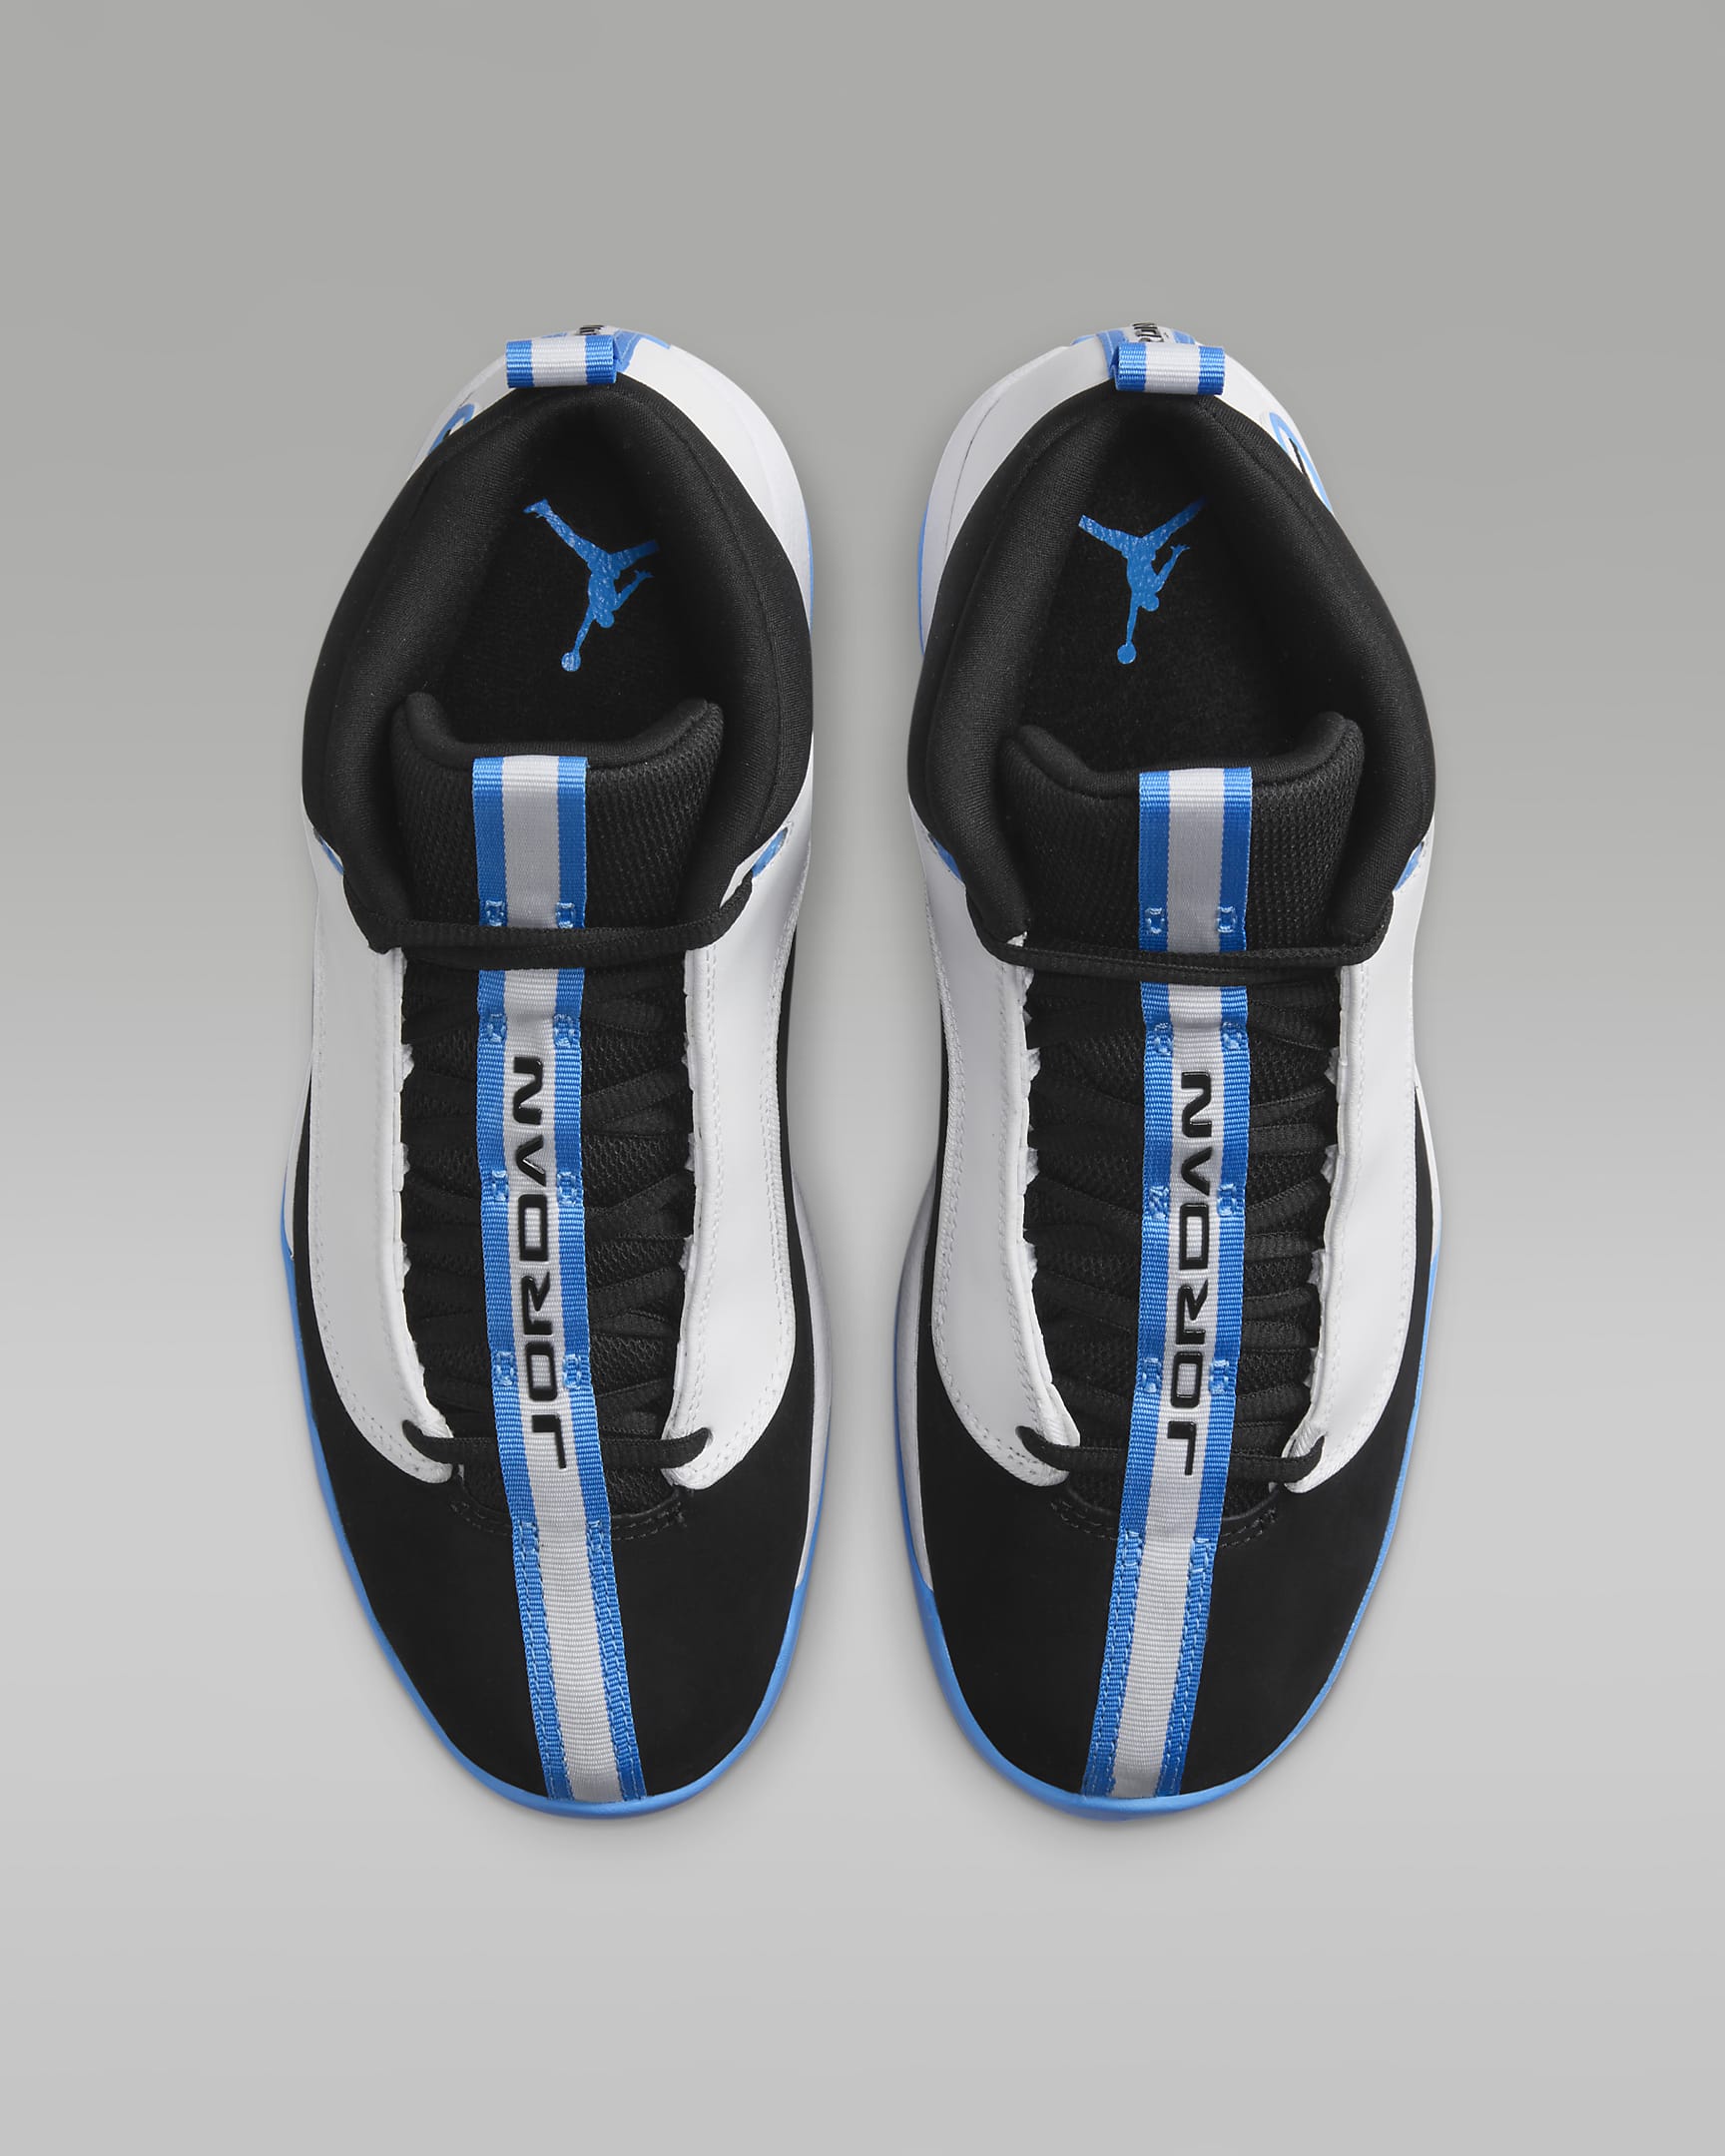 Unbelievable Comfort! Jordan Jumpman Pro Quick Men’s Shoes Review Will Blow Your Mind!